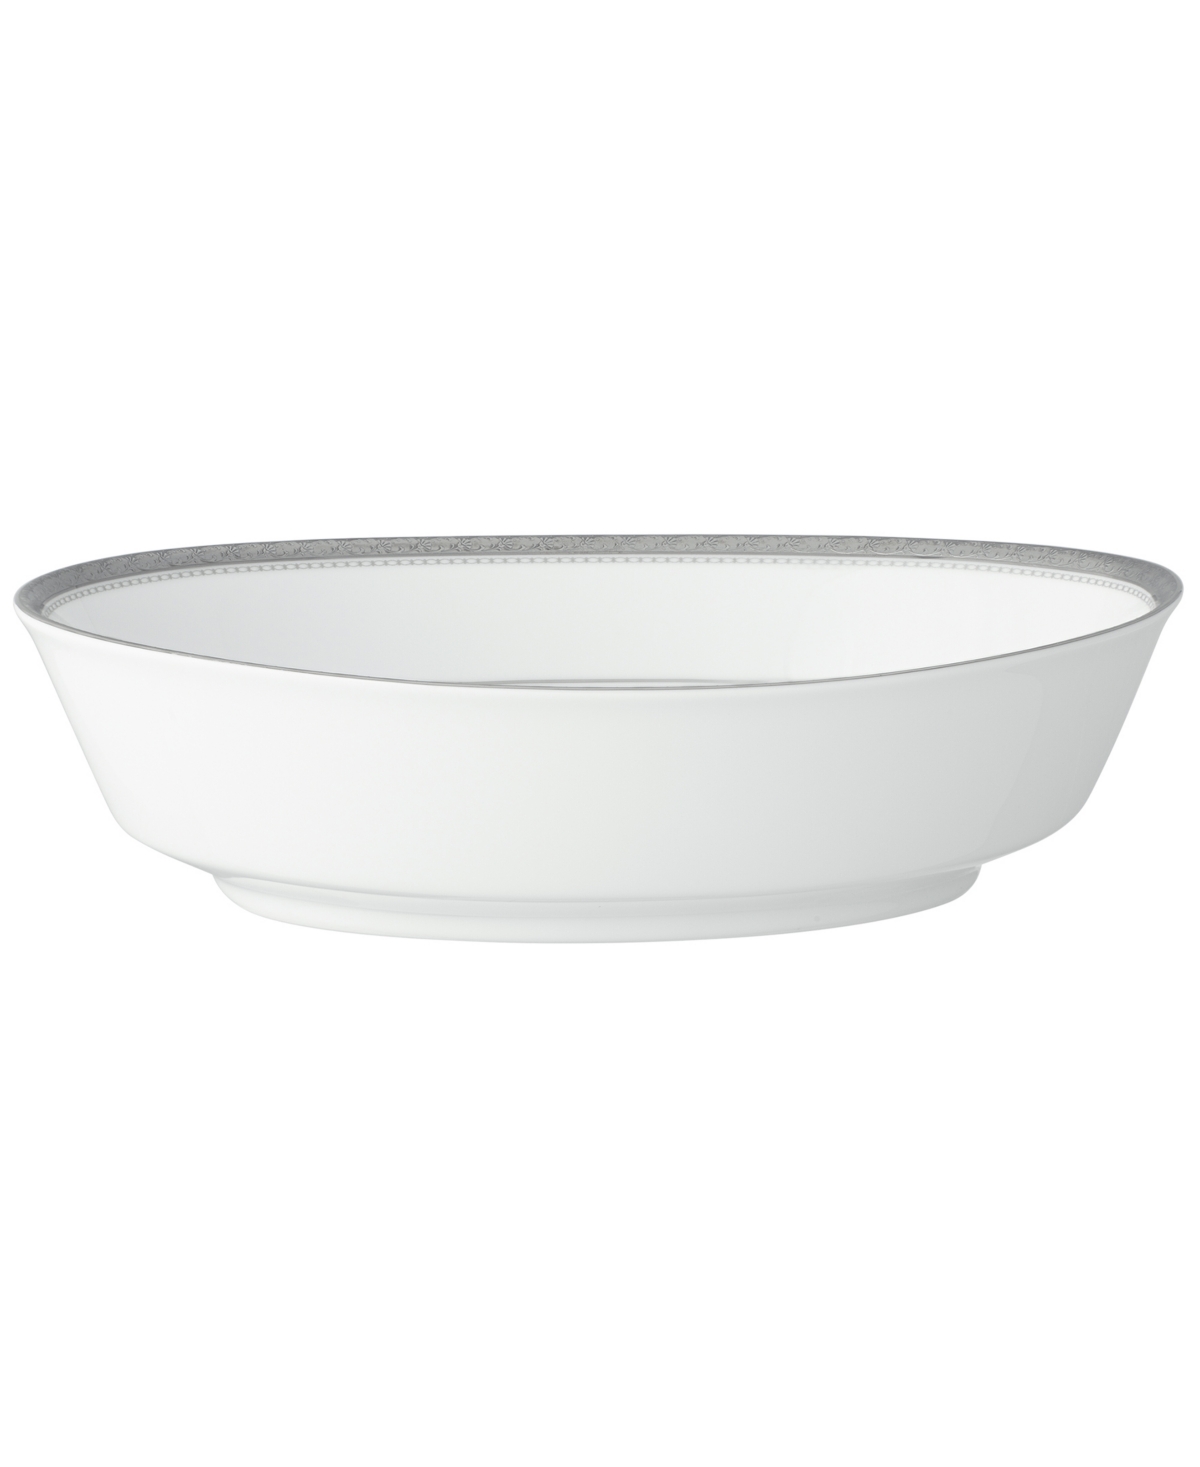 Noritake Charlotta Platinum Oval Vegetable Bowl, 32 oz In White